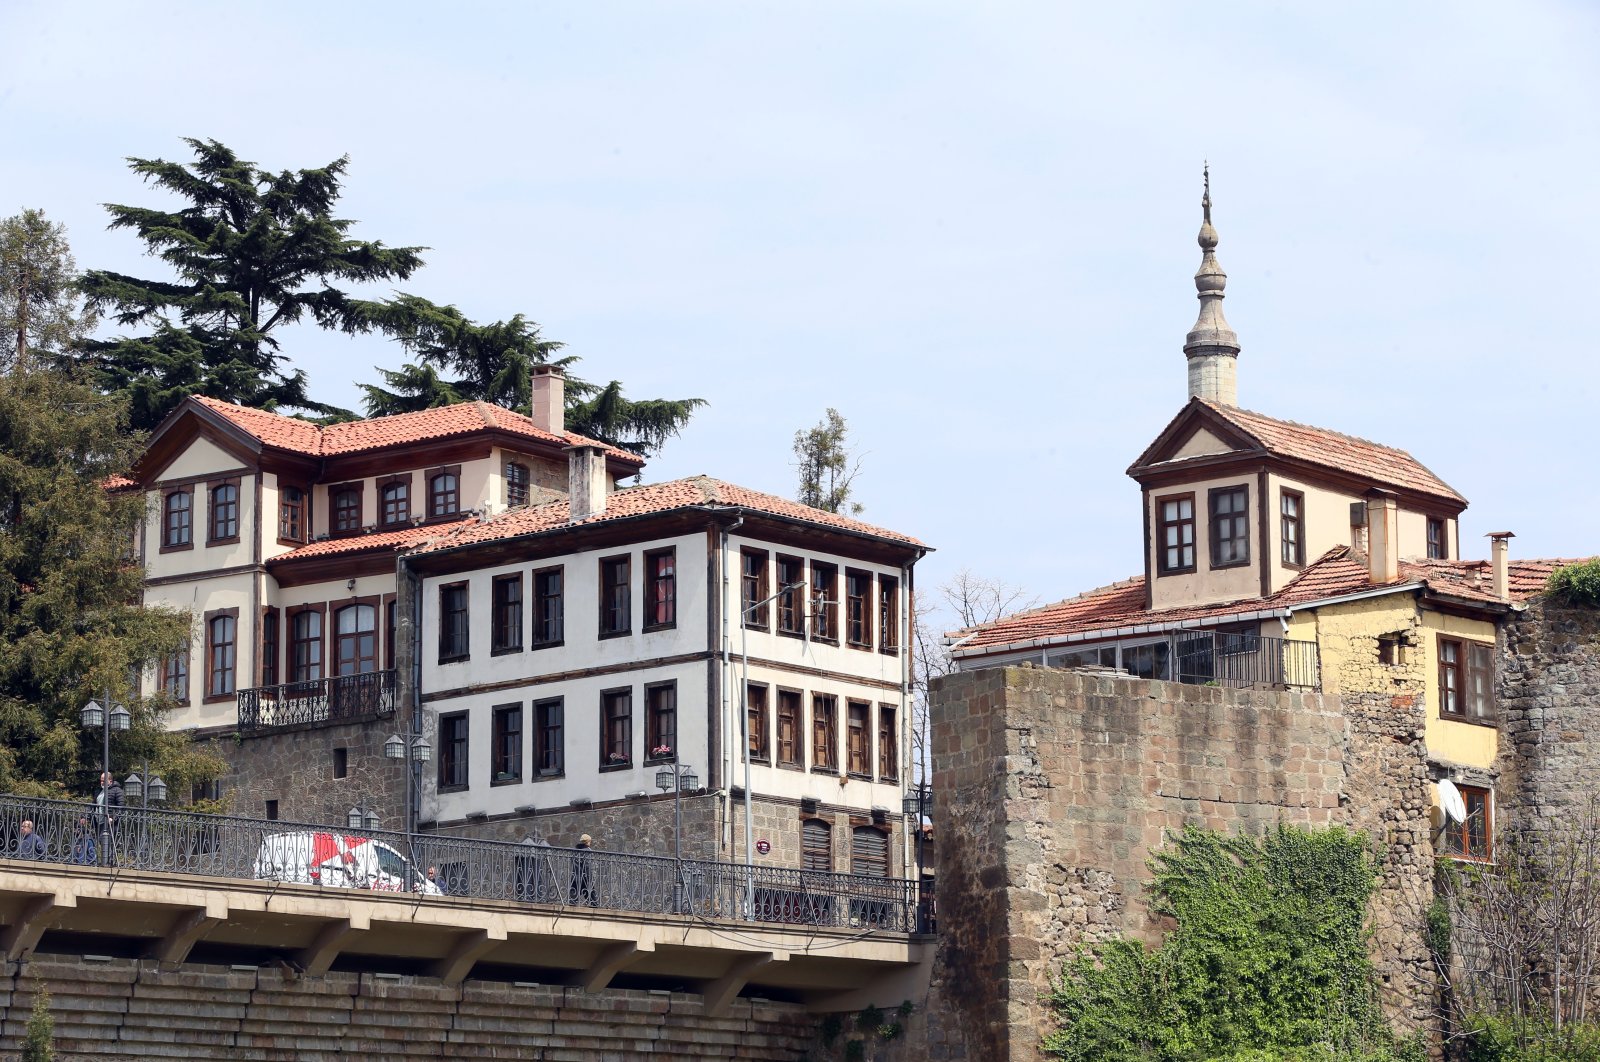 Trabzon Turki menawarkan perjalanan bersejarah dengan teksturnya yang kaya